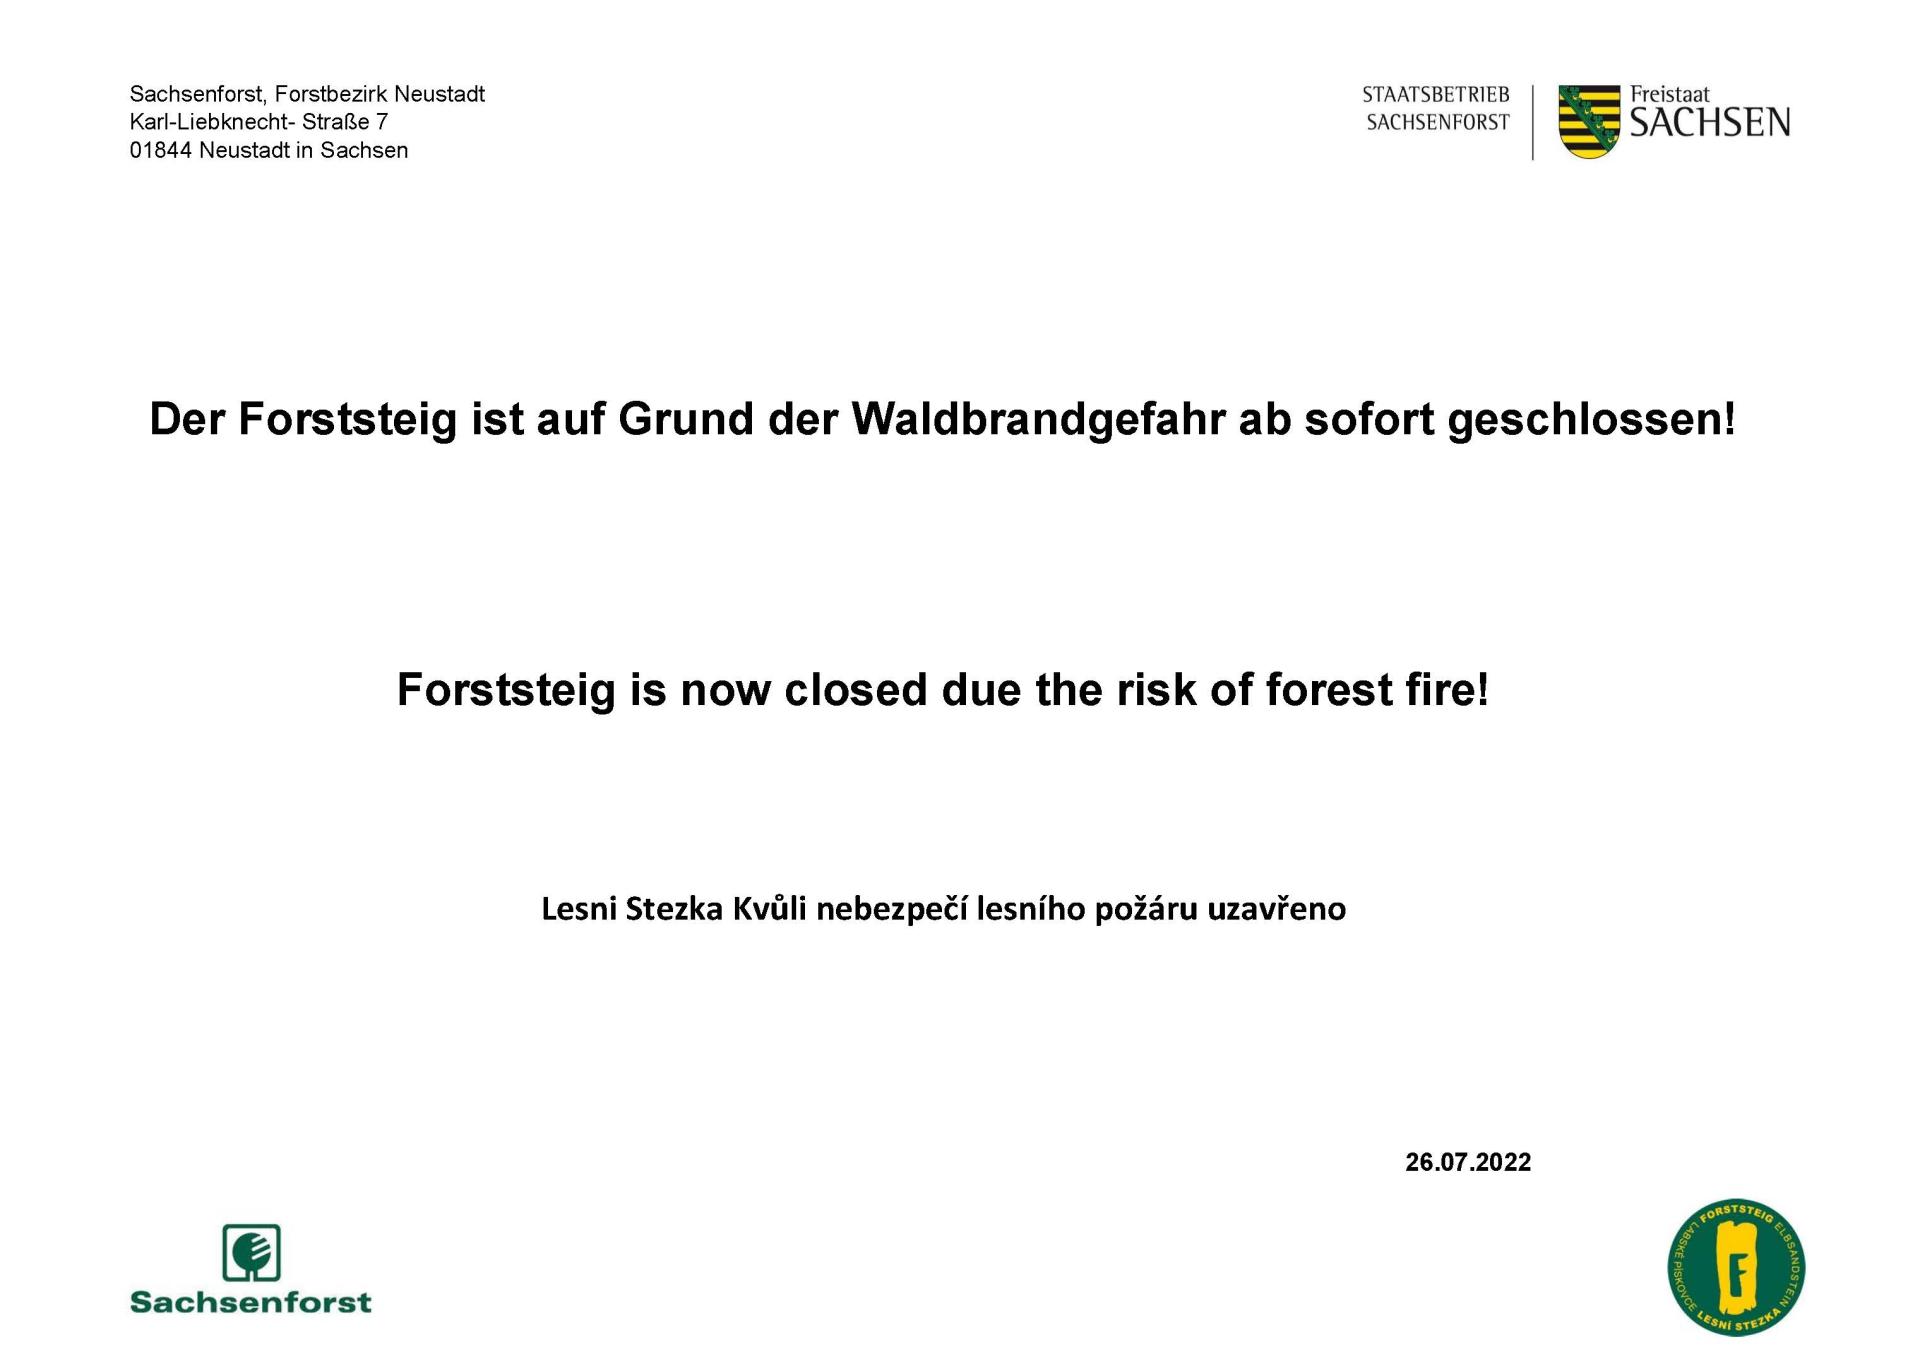 Der Forststeig ist auf Grund der Waldbrandgefahr ab sofort geschlossen